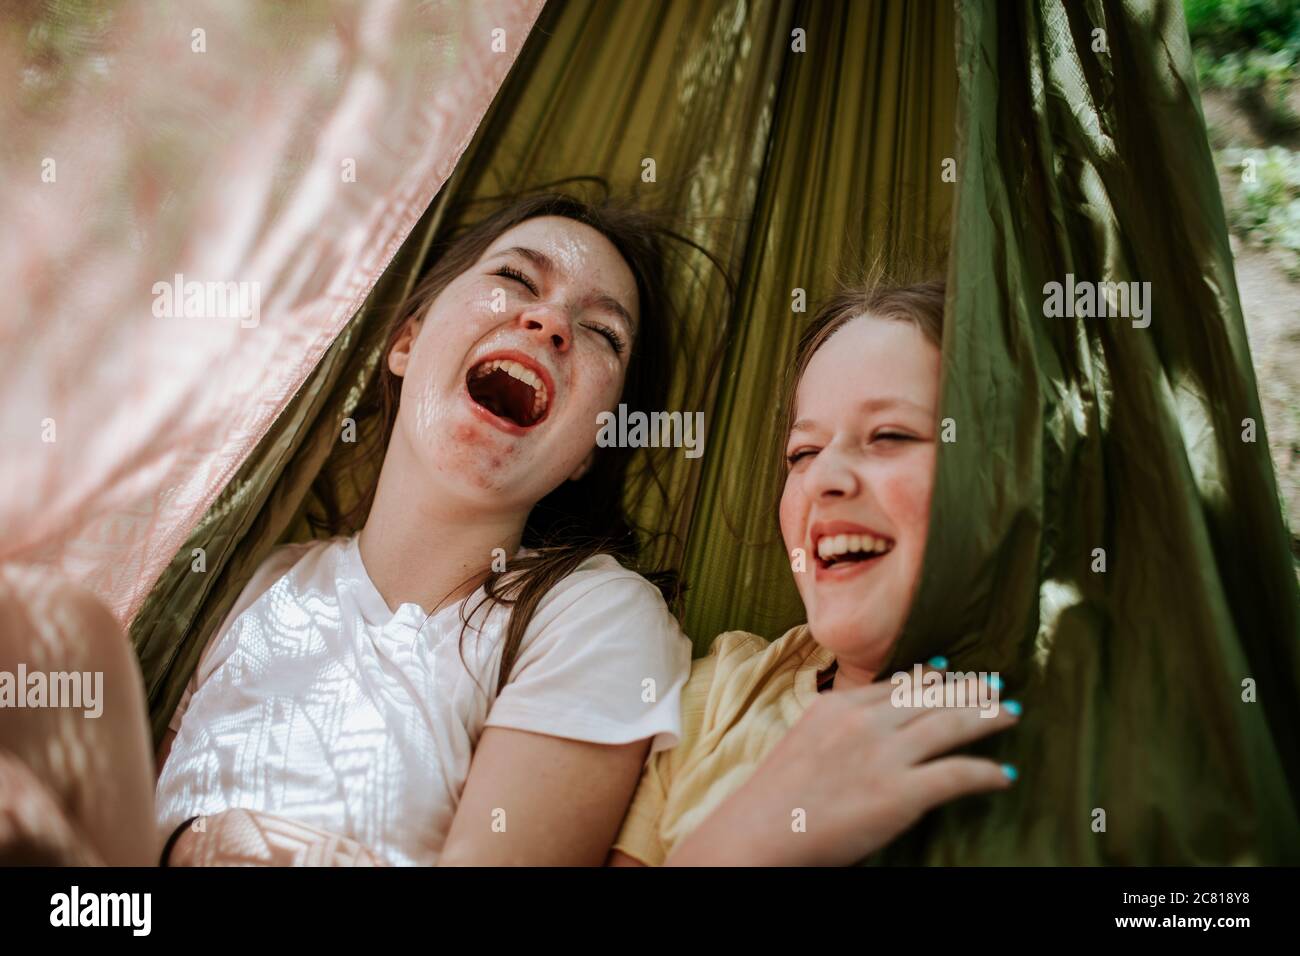 Les jeunes filles rient et sourient à l'extérieur Banque D'Images